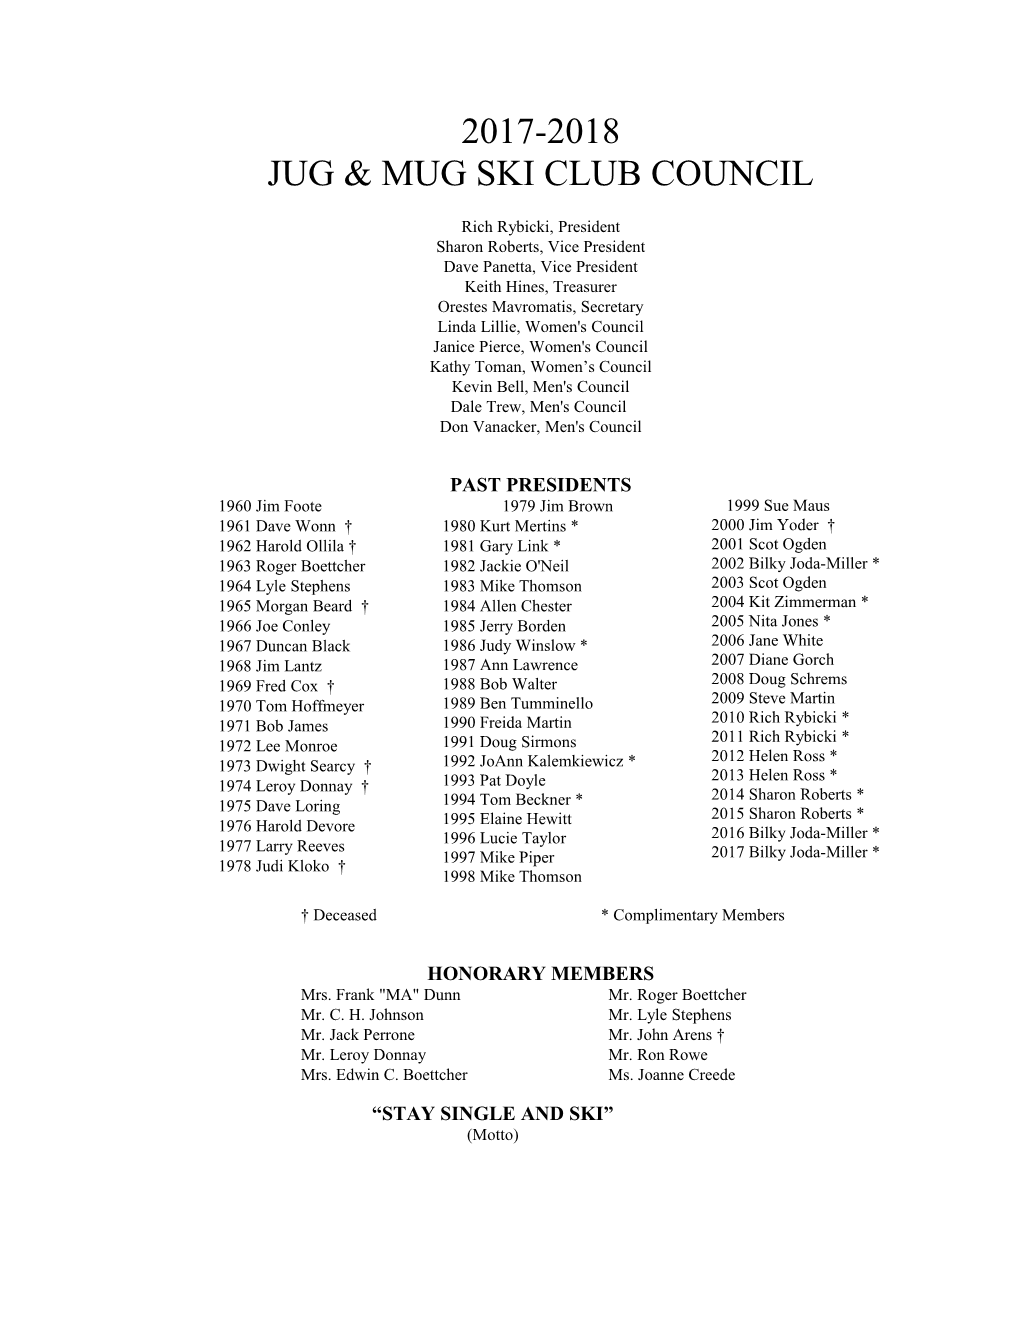 Jug & Mug Ski Club Council